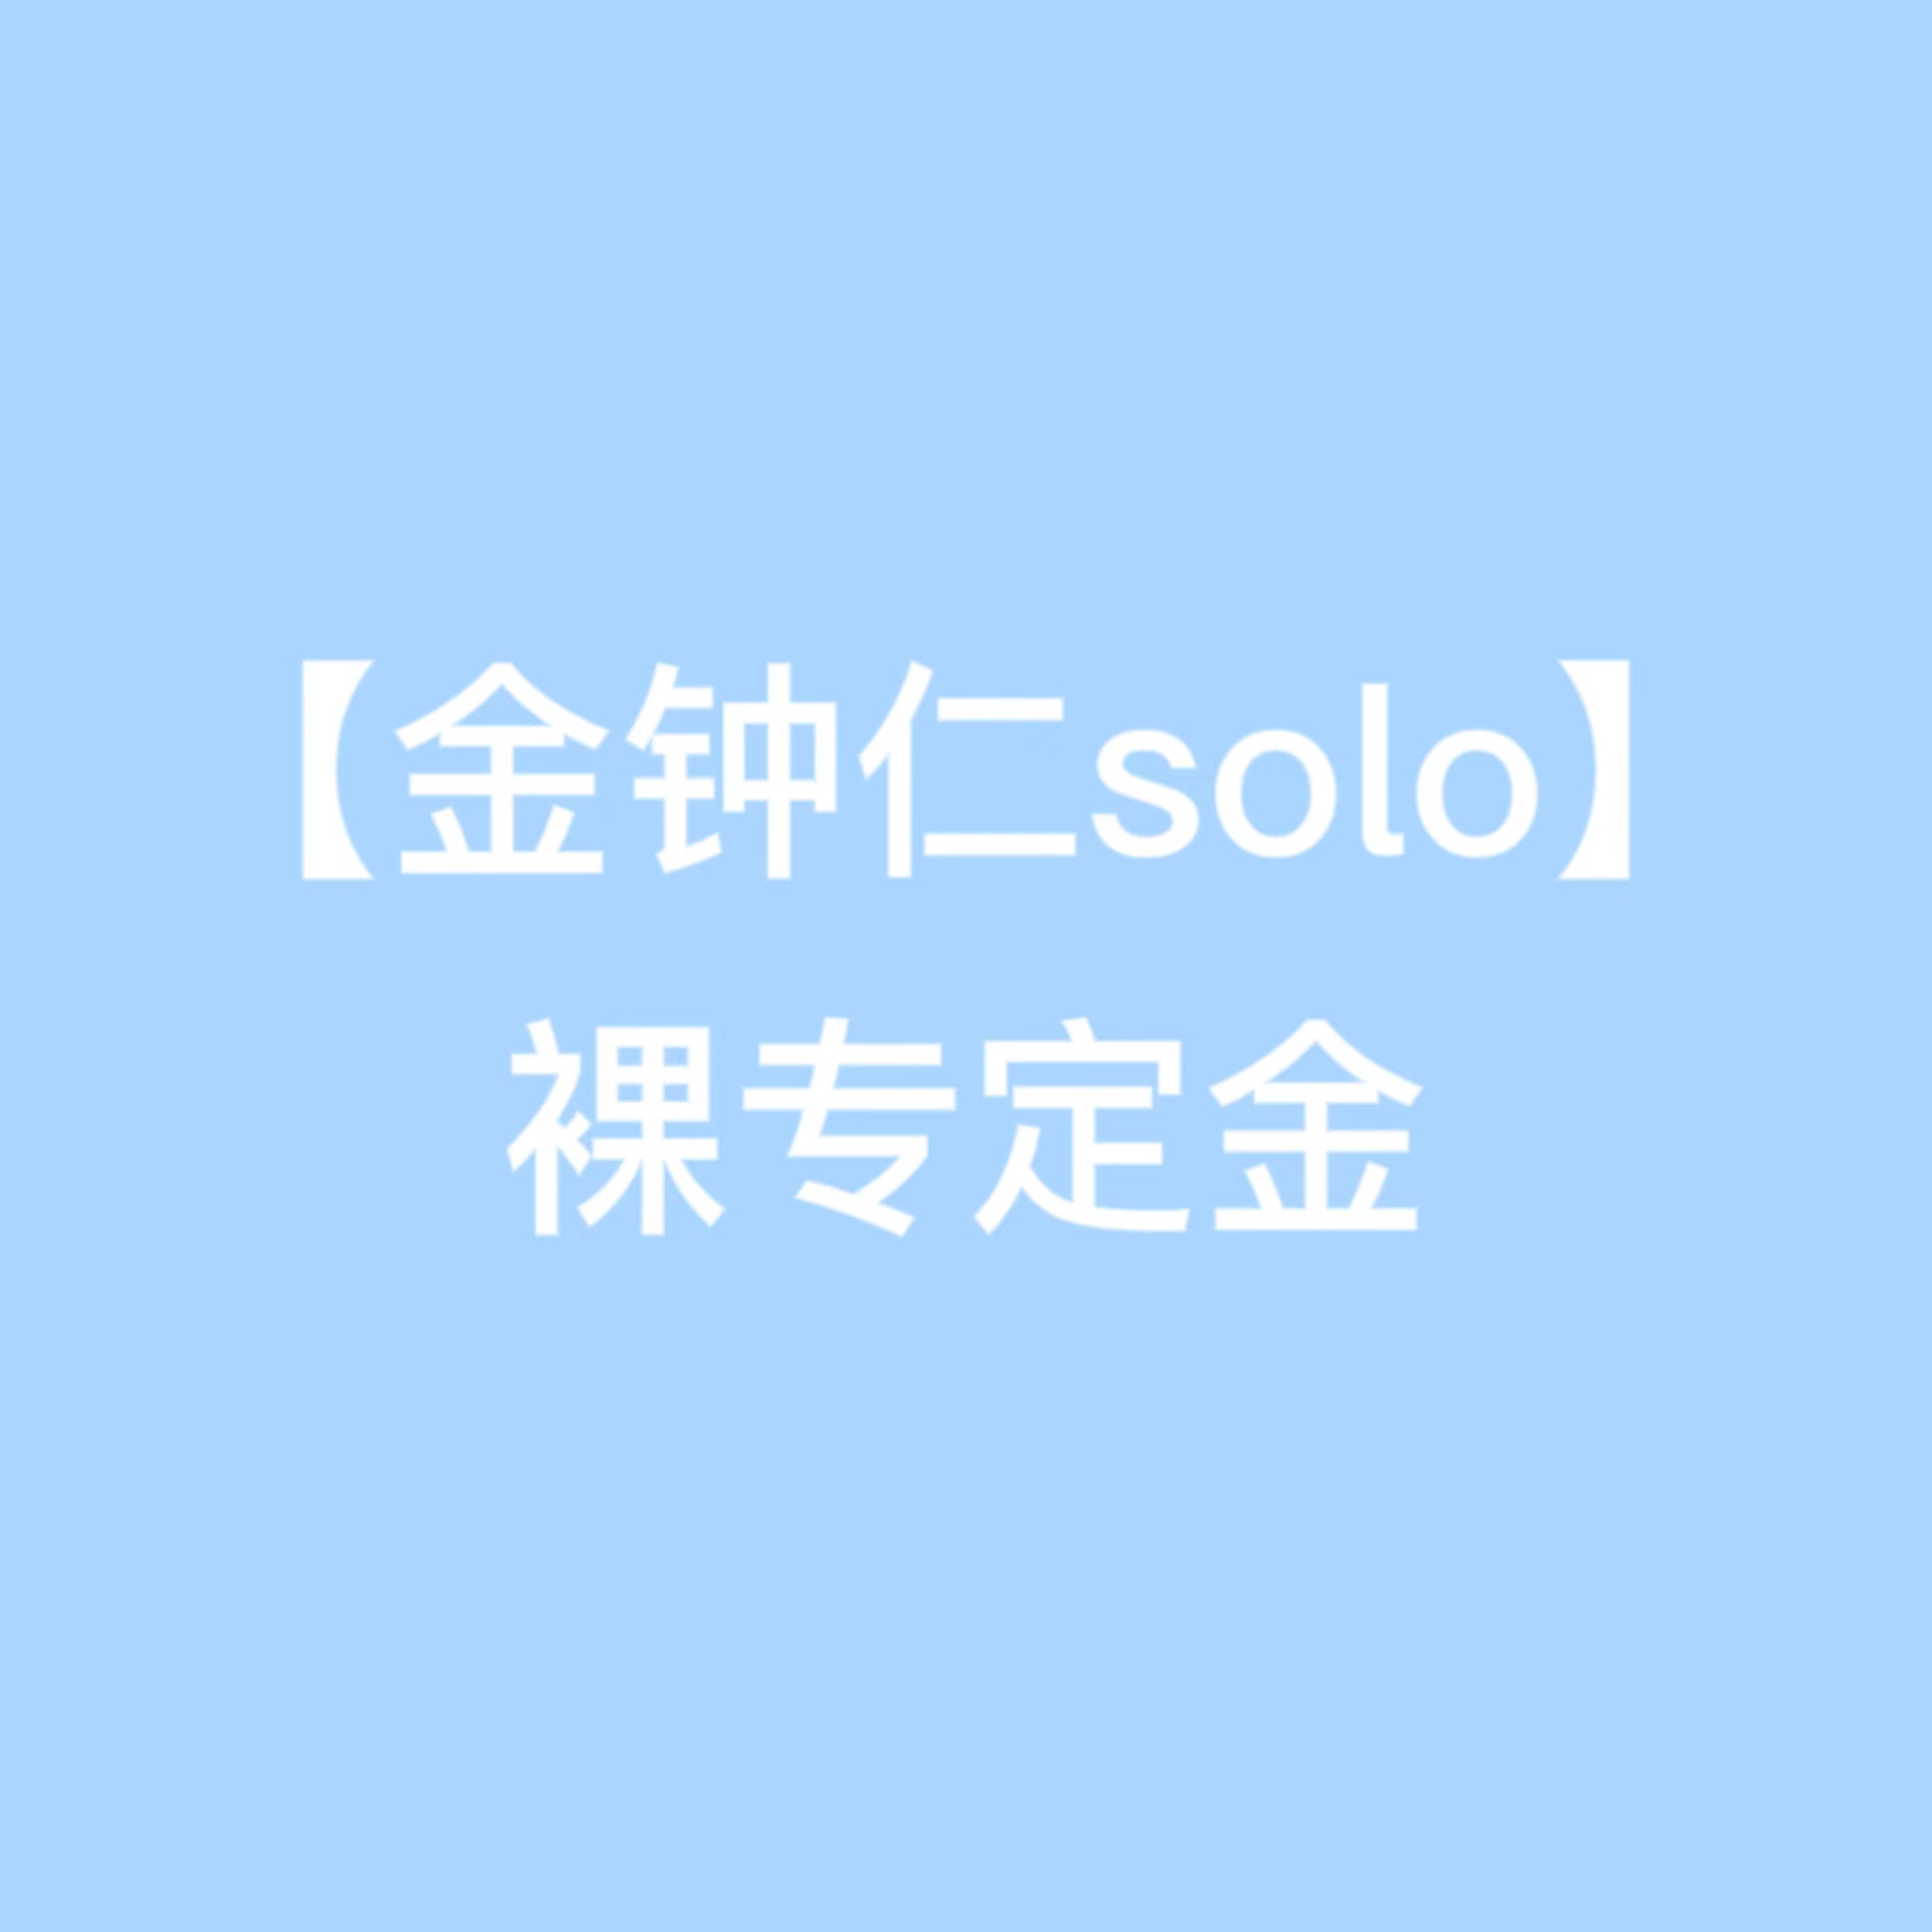 [定金 裸专] 金钟仁SOLO2首批裸专定金_EXO_Elyxion_指示牌